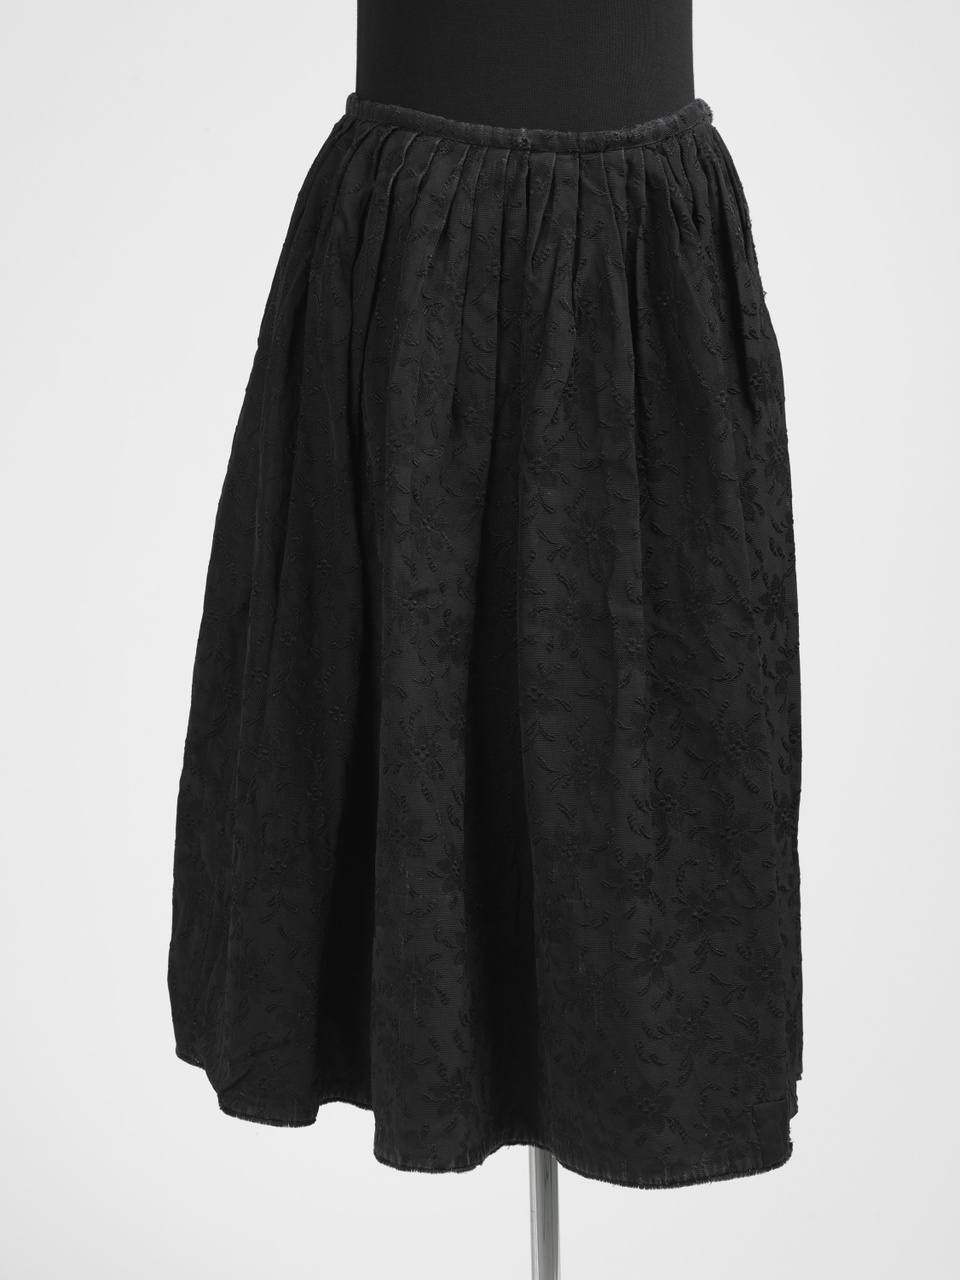 Zwarte rok met ingeweven bloemmotieven